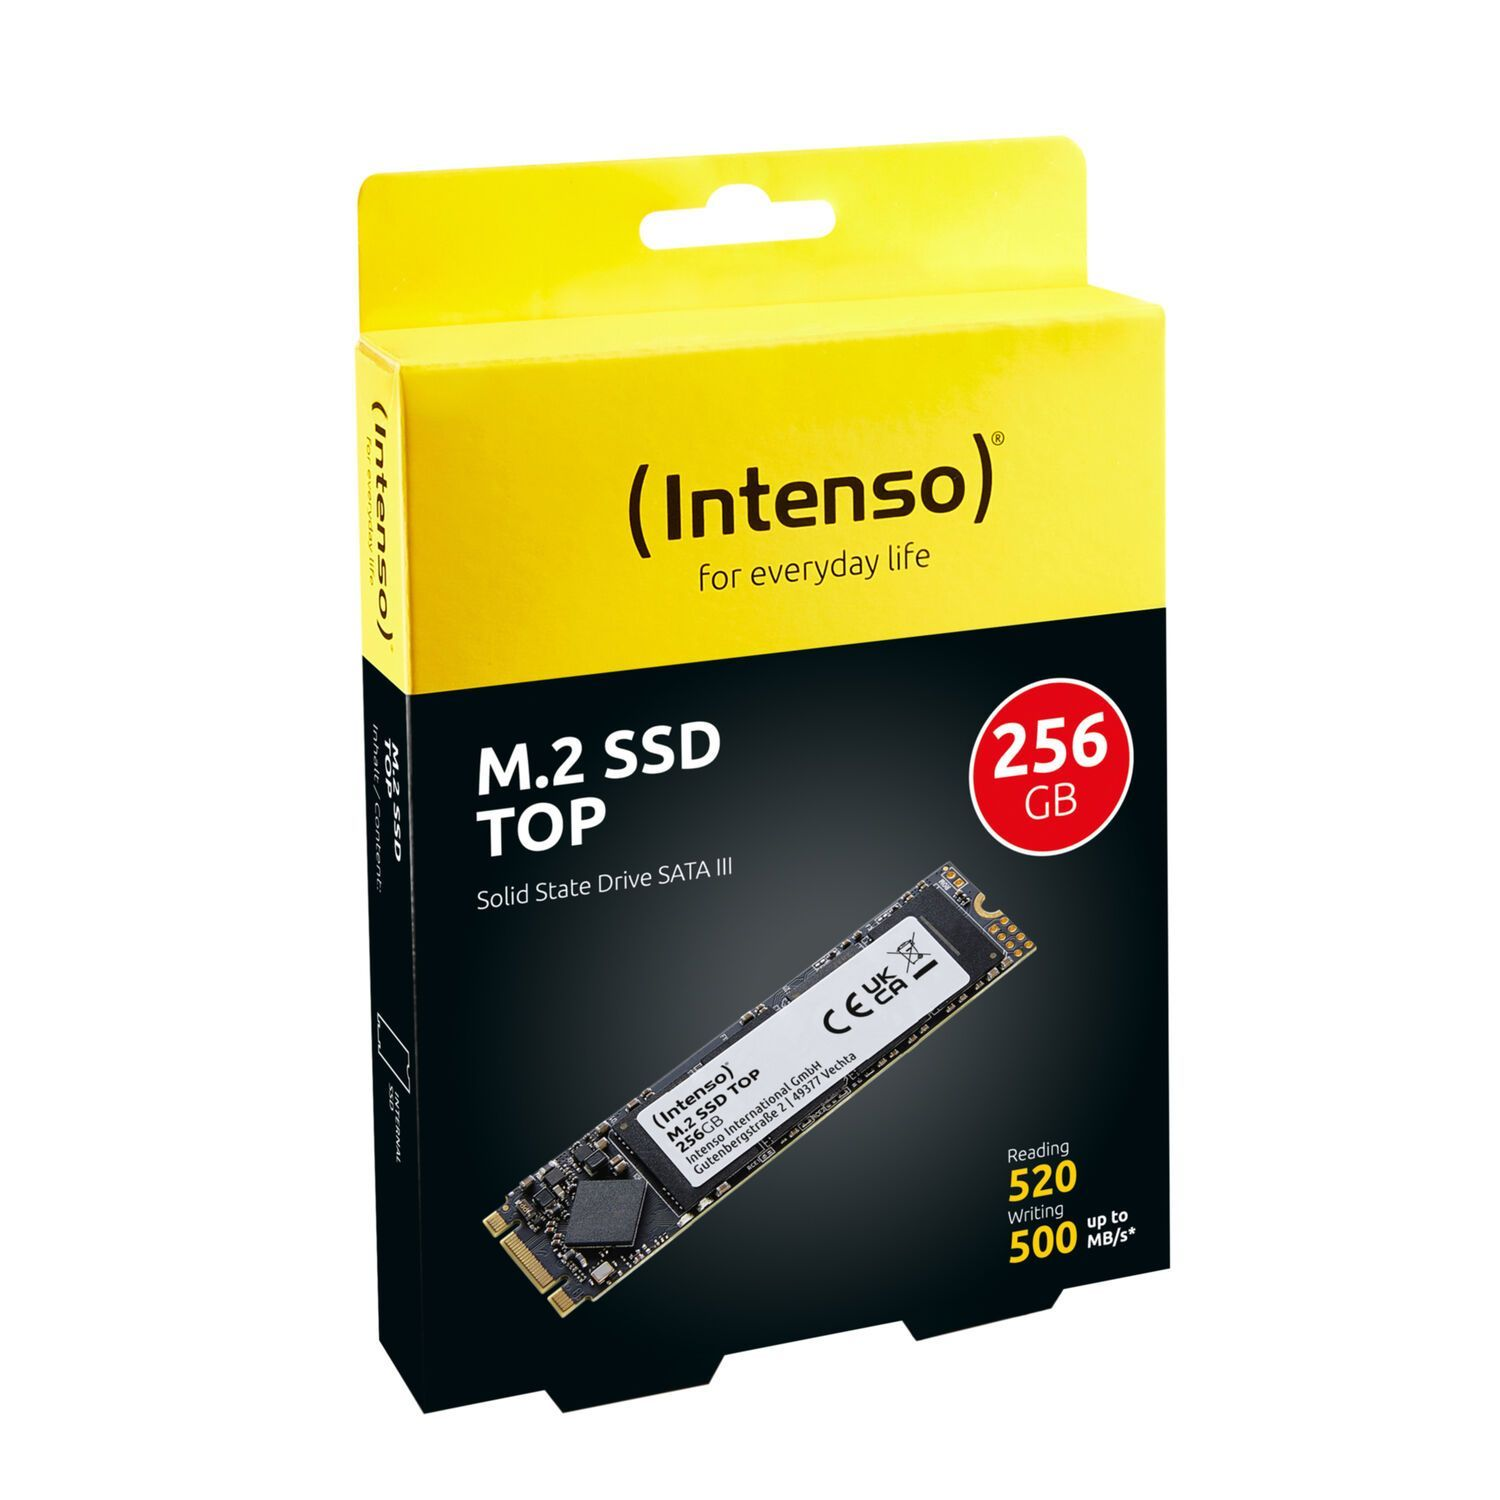 Top, SSD, INTENSO intern GB, 256